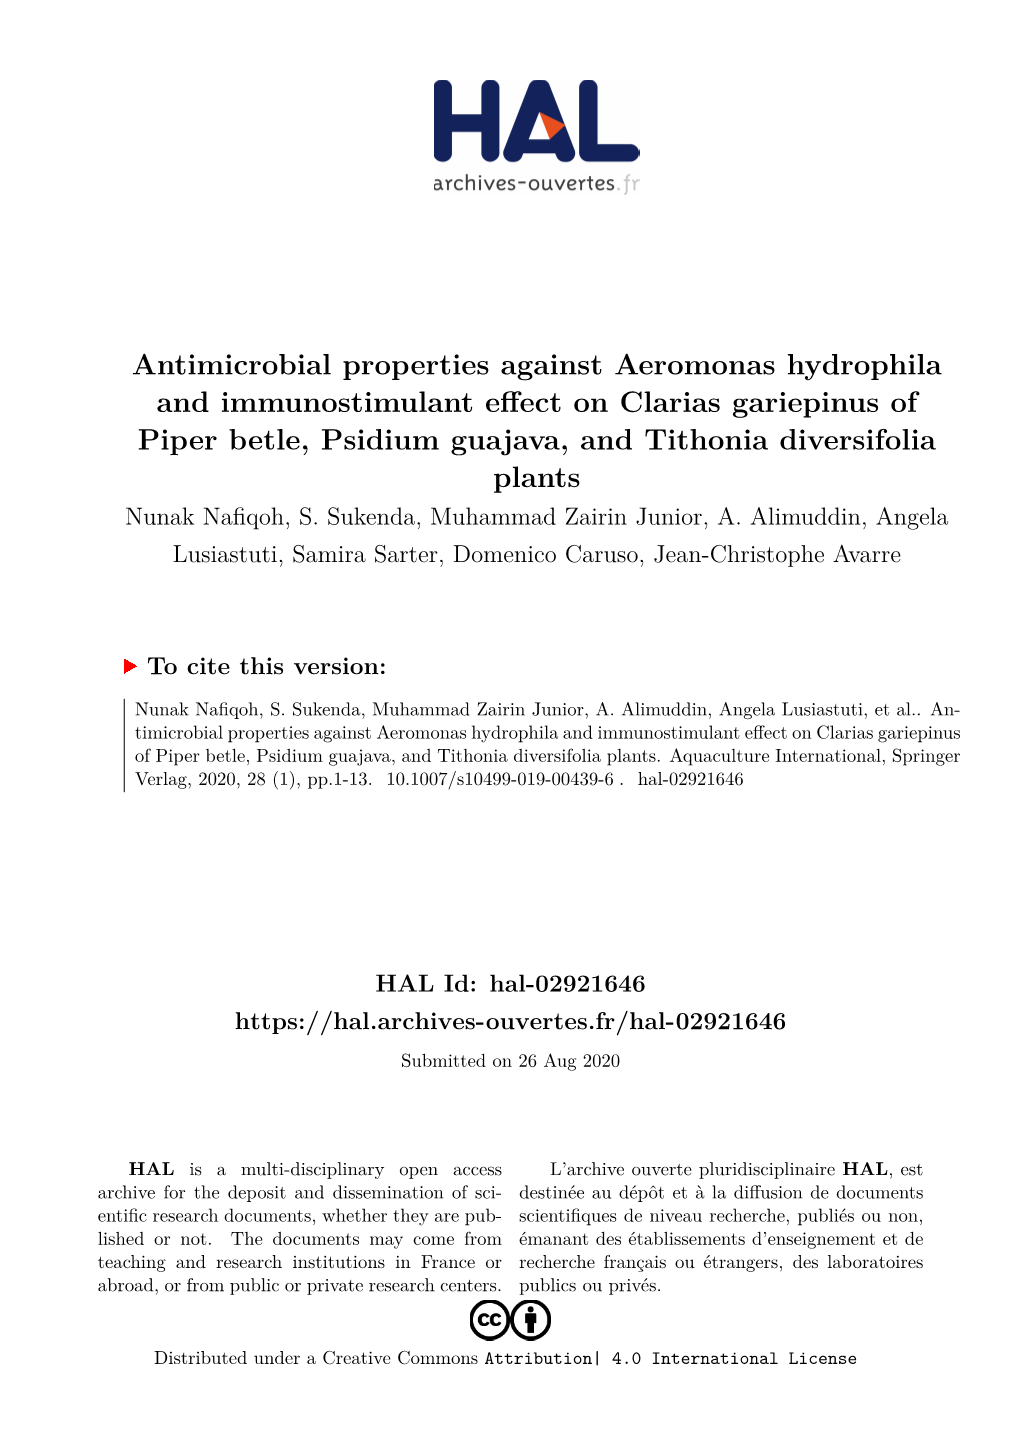 Antimicrobial Properties Against Aeromonas Hydrophila and Immunostimulant Effect on Clarias Gariepinus of Piper Betle, Psidium G